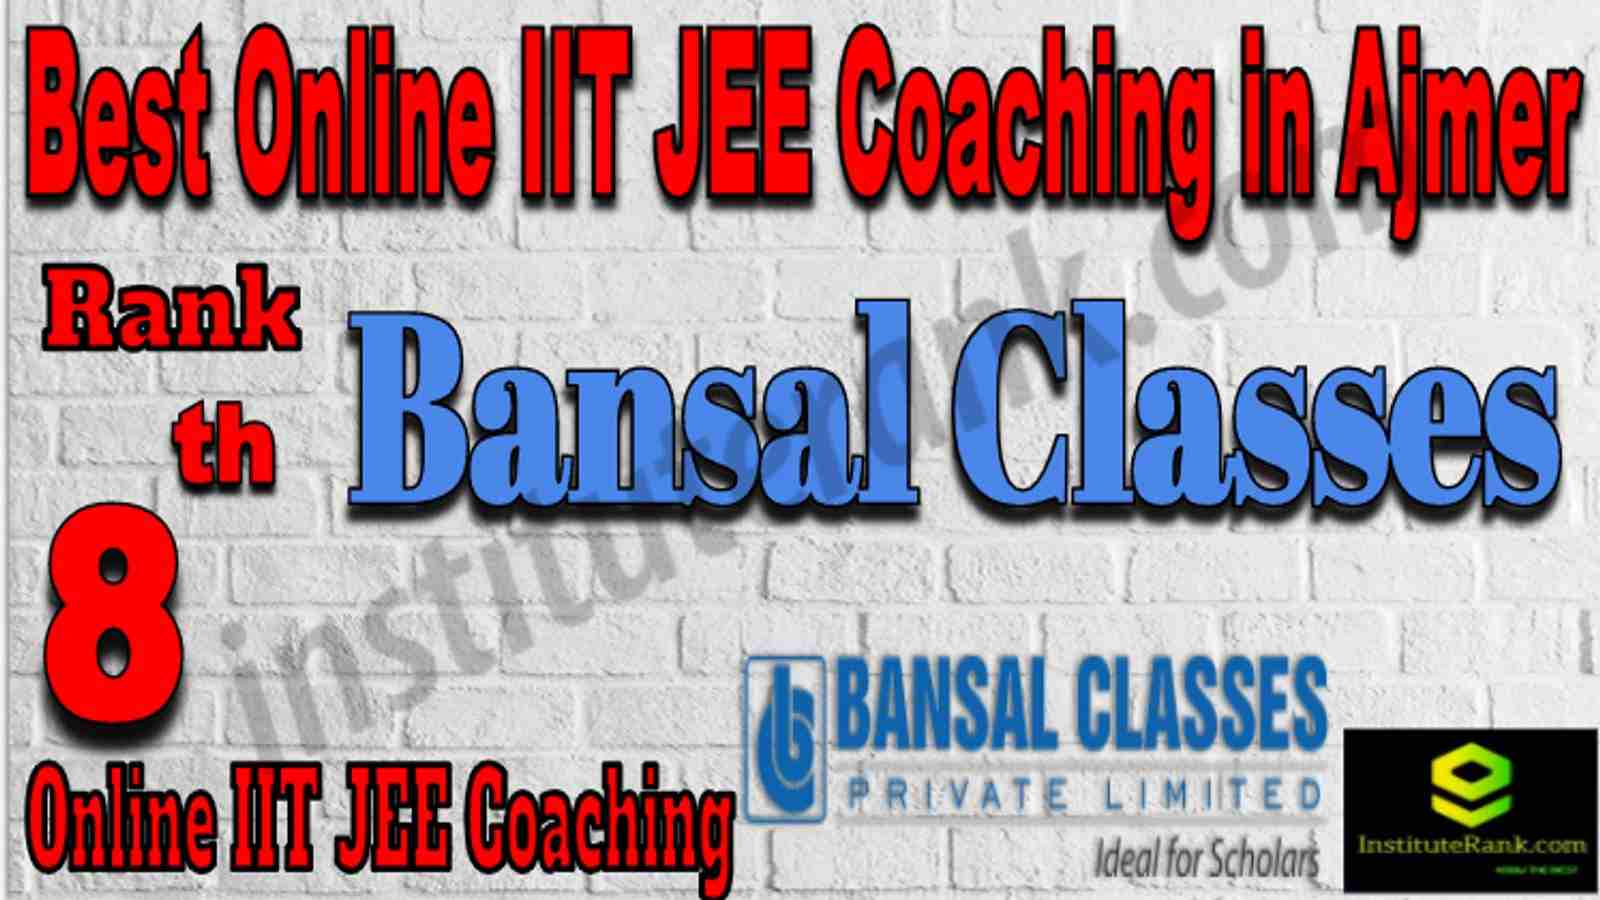 Rank 8 Best Online IIT JEE Coaching in Ajmer